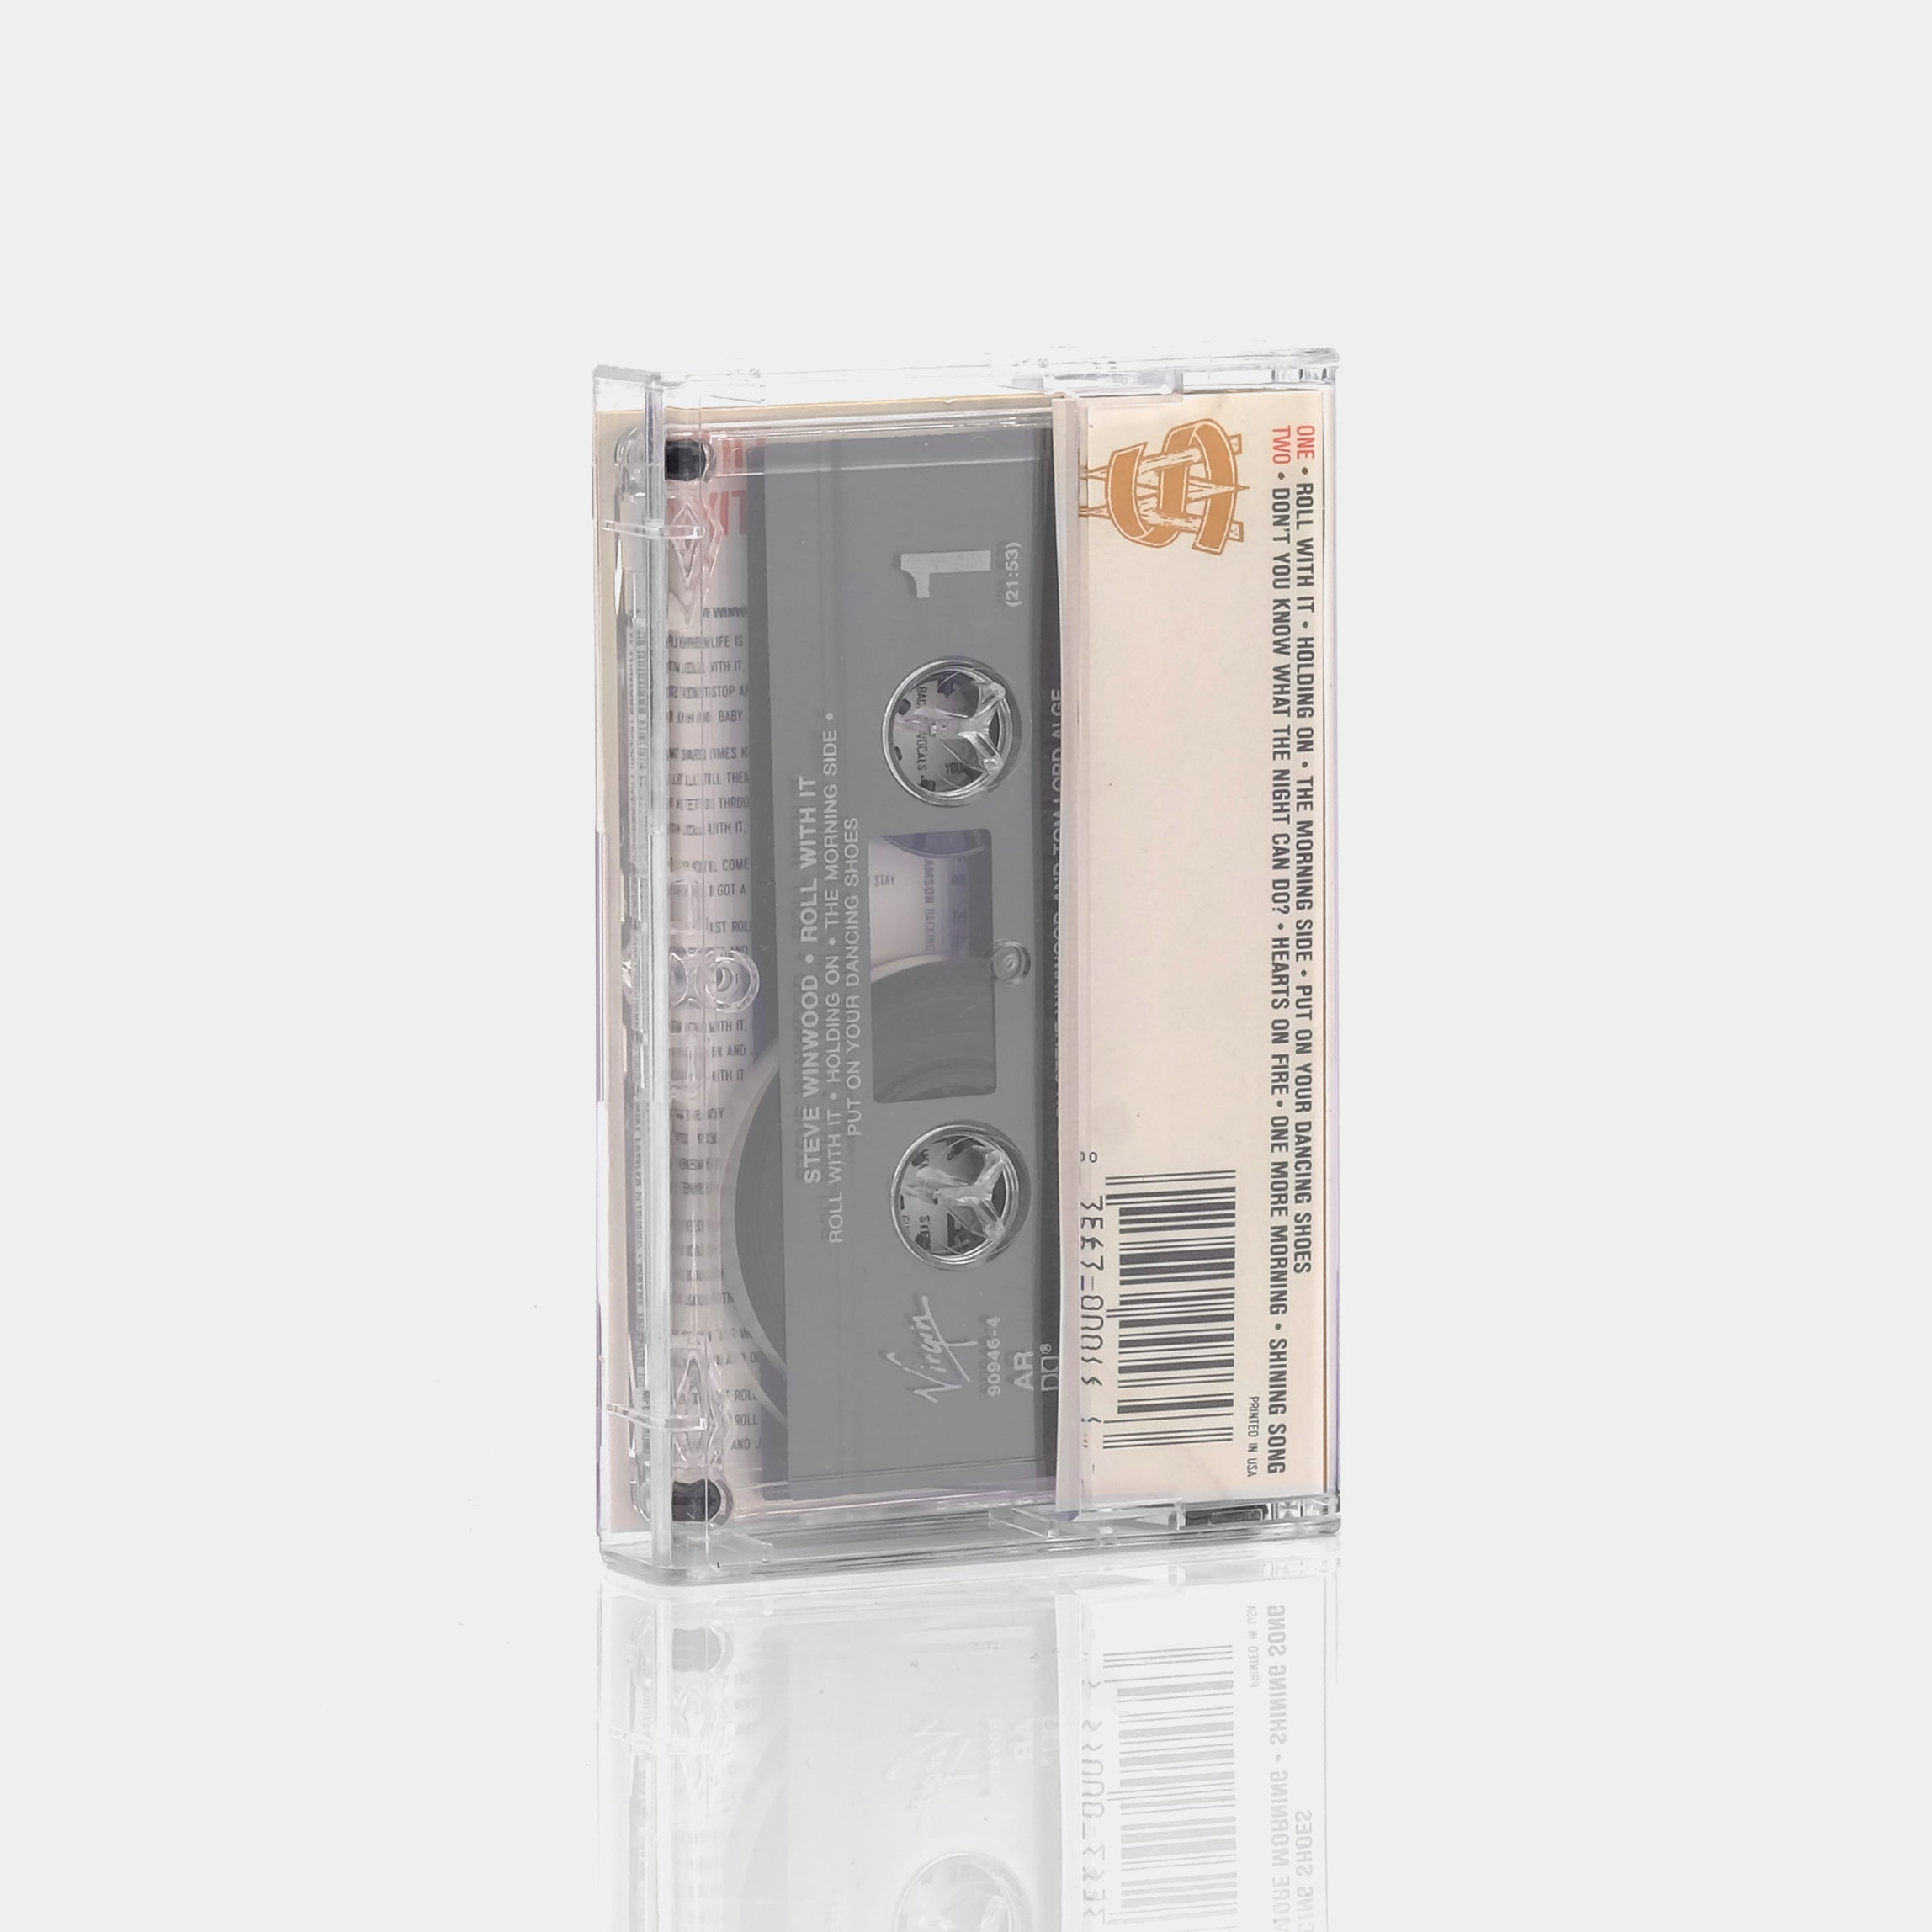 Steve Winwood - Roll With It Cassette Tape